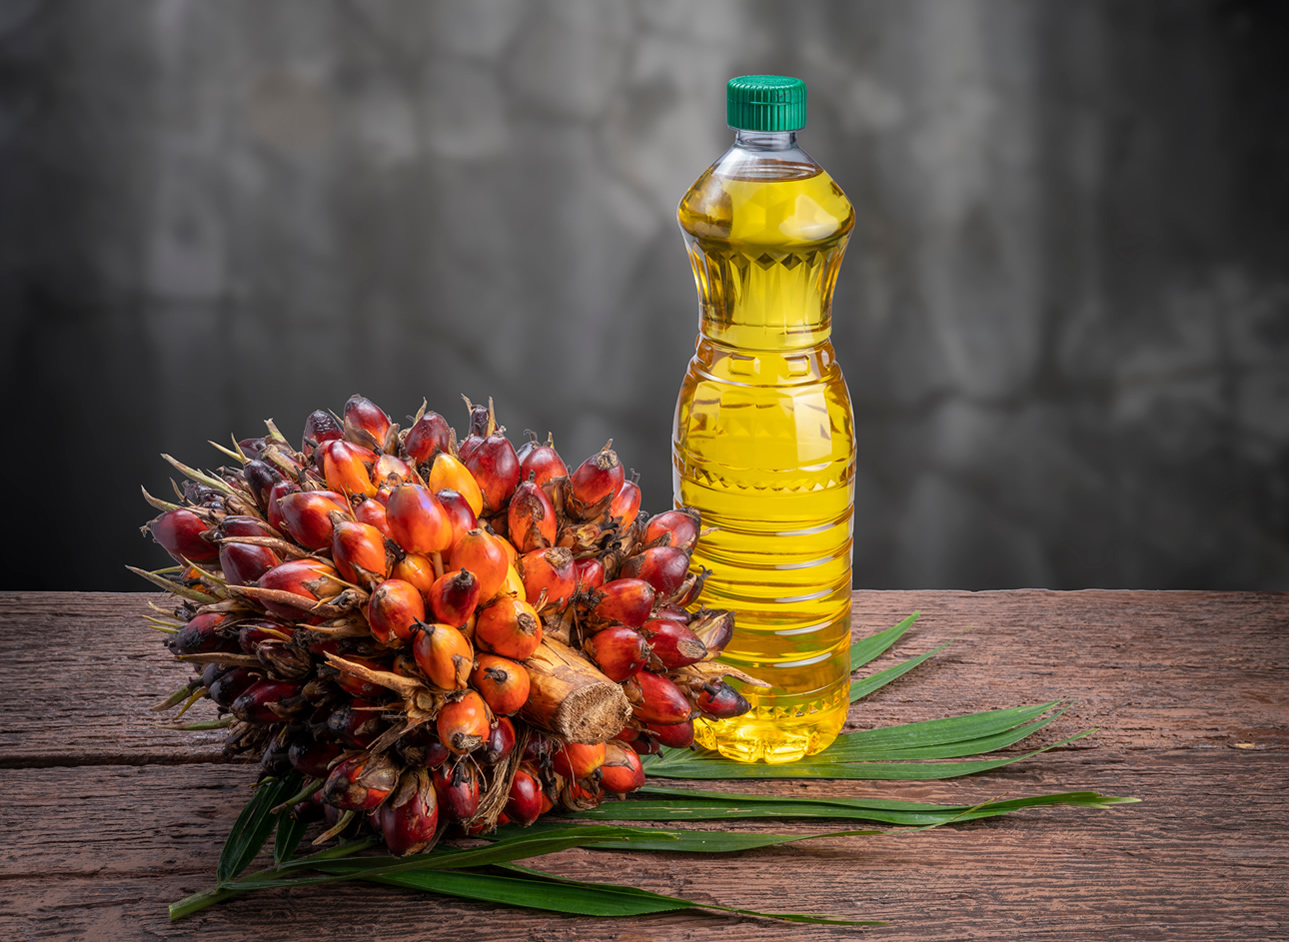 L'huile de palme revient en force, en remplacement de l'huile de tournesol, sans mention spécifique sur les produits